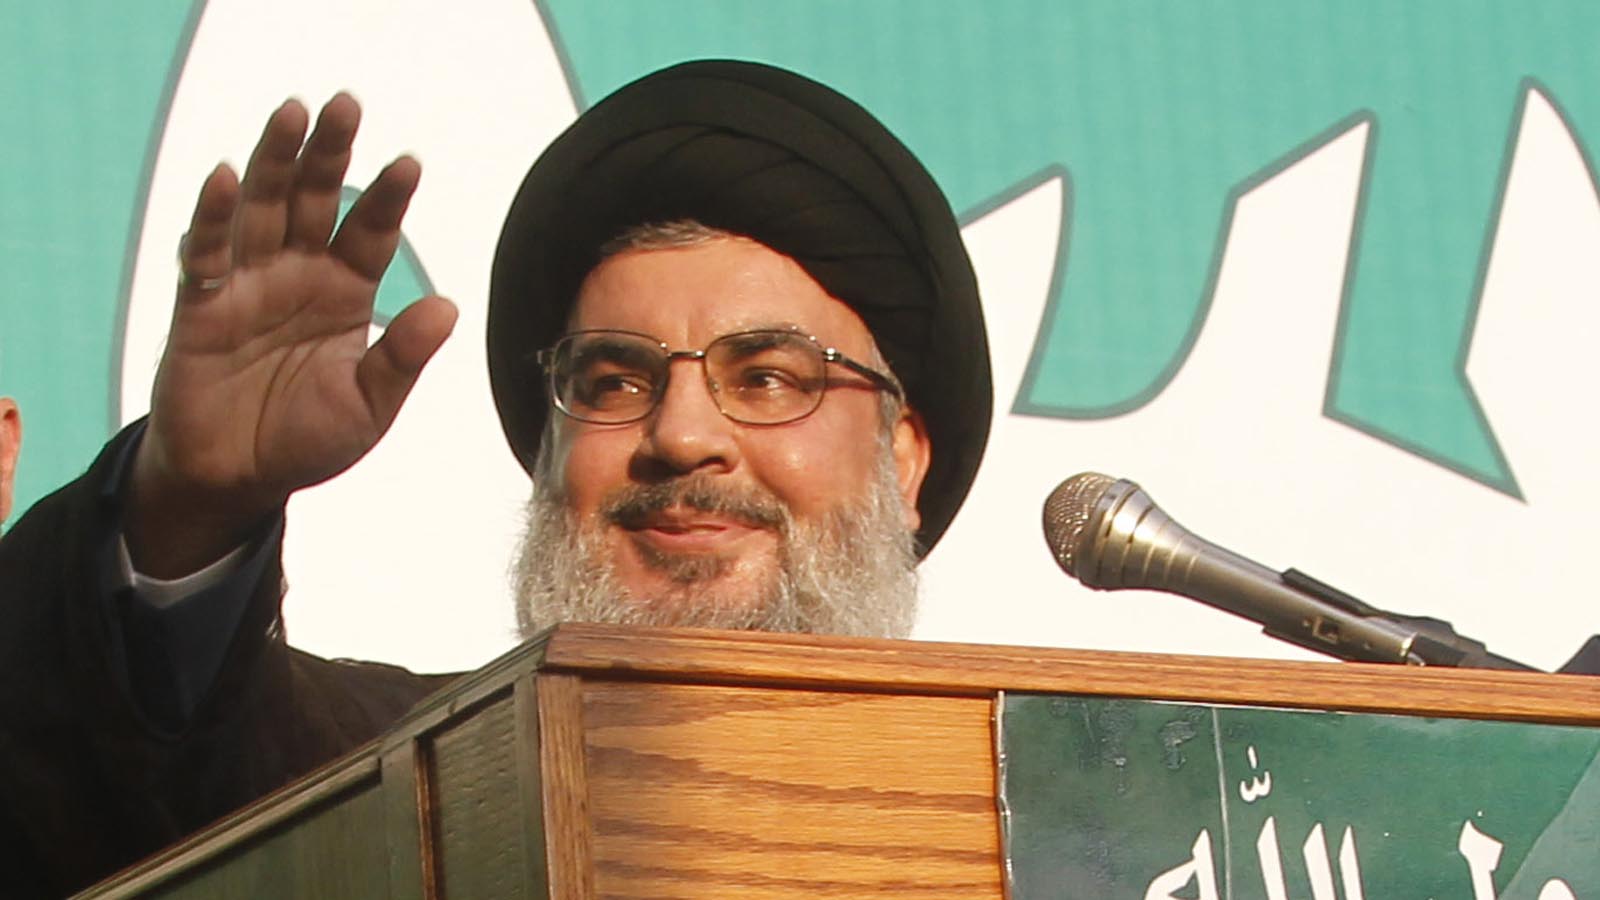 حزب الله يسجل انتصاراً سياسياً كبيراً بفضل بومبيو